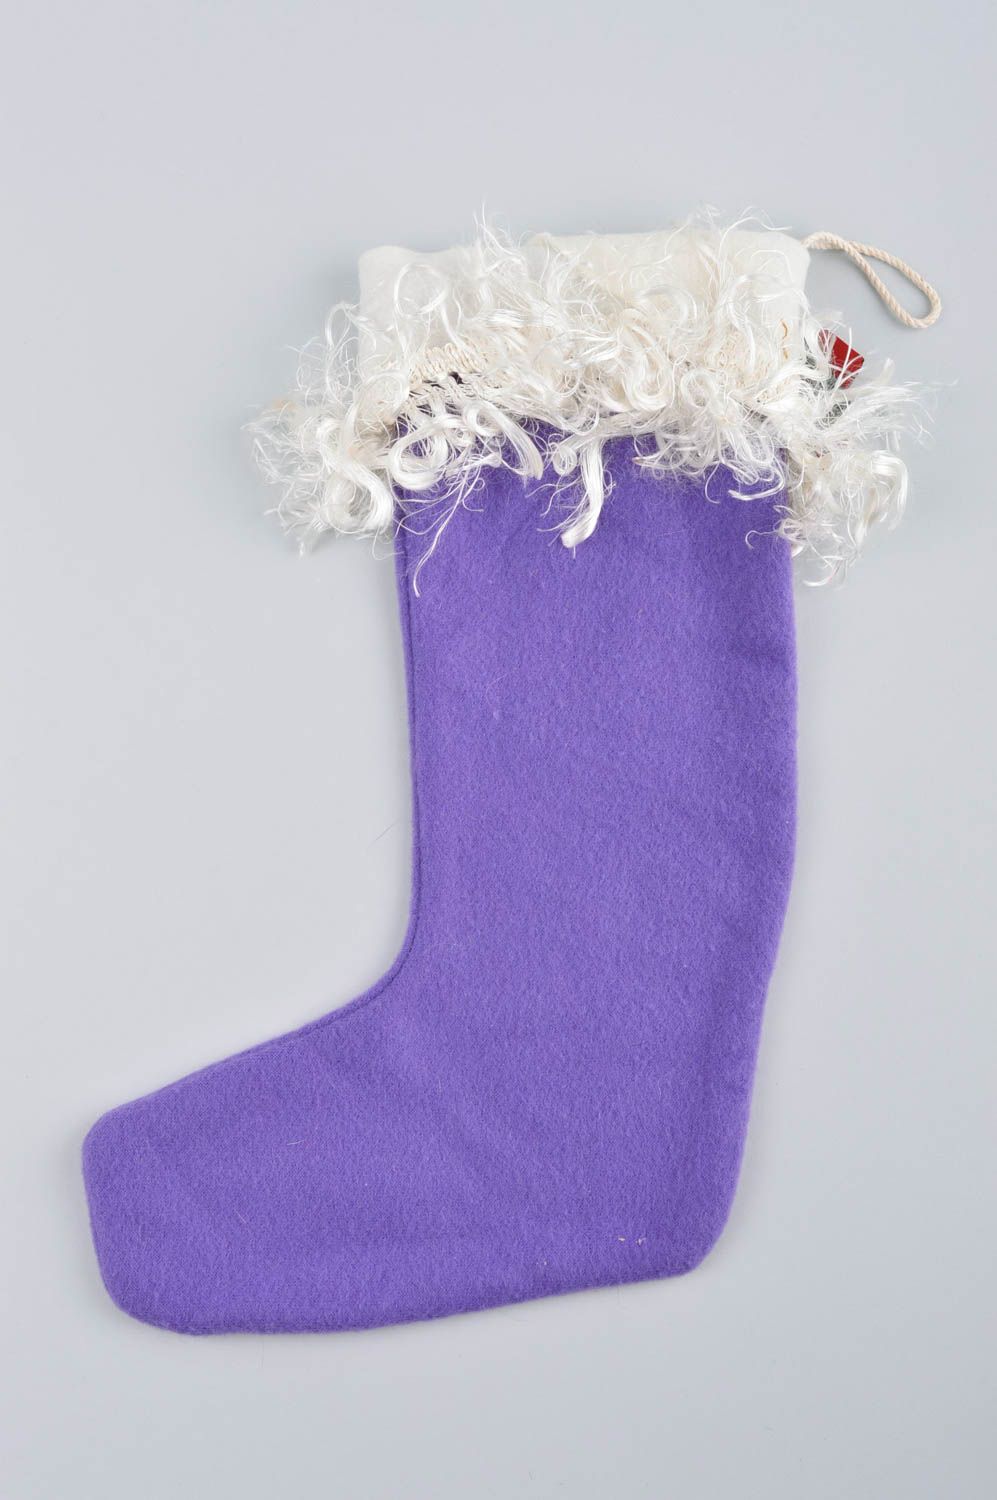 Handmade Christmas stockings Xmas stockings handmade decorations souvenir ideas photo 4